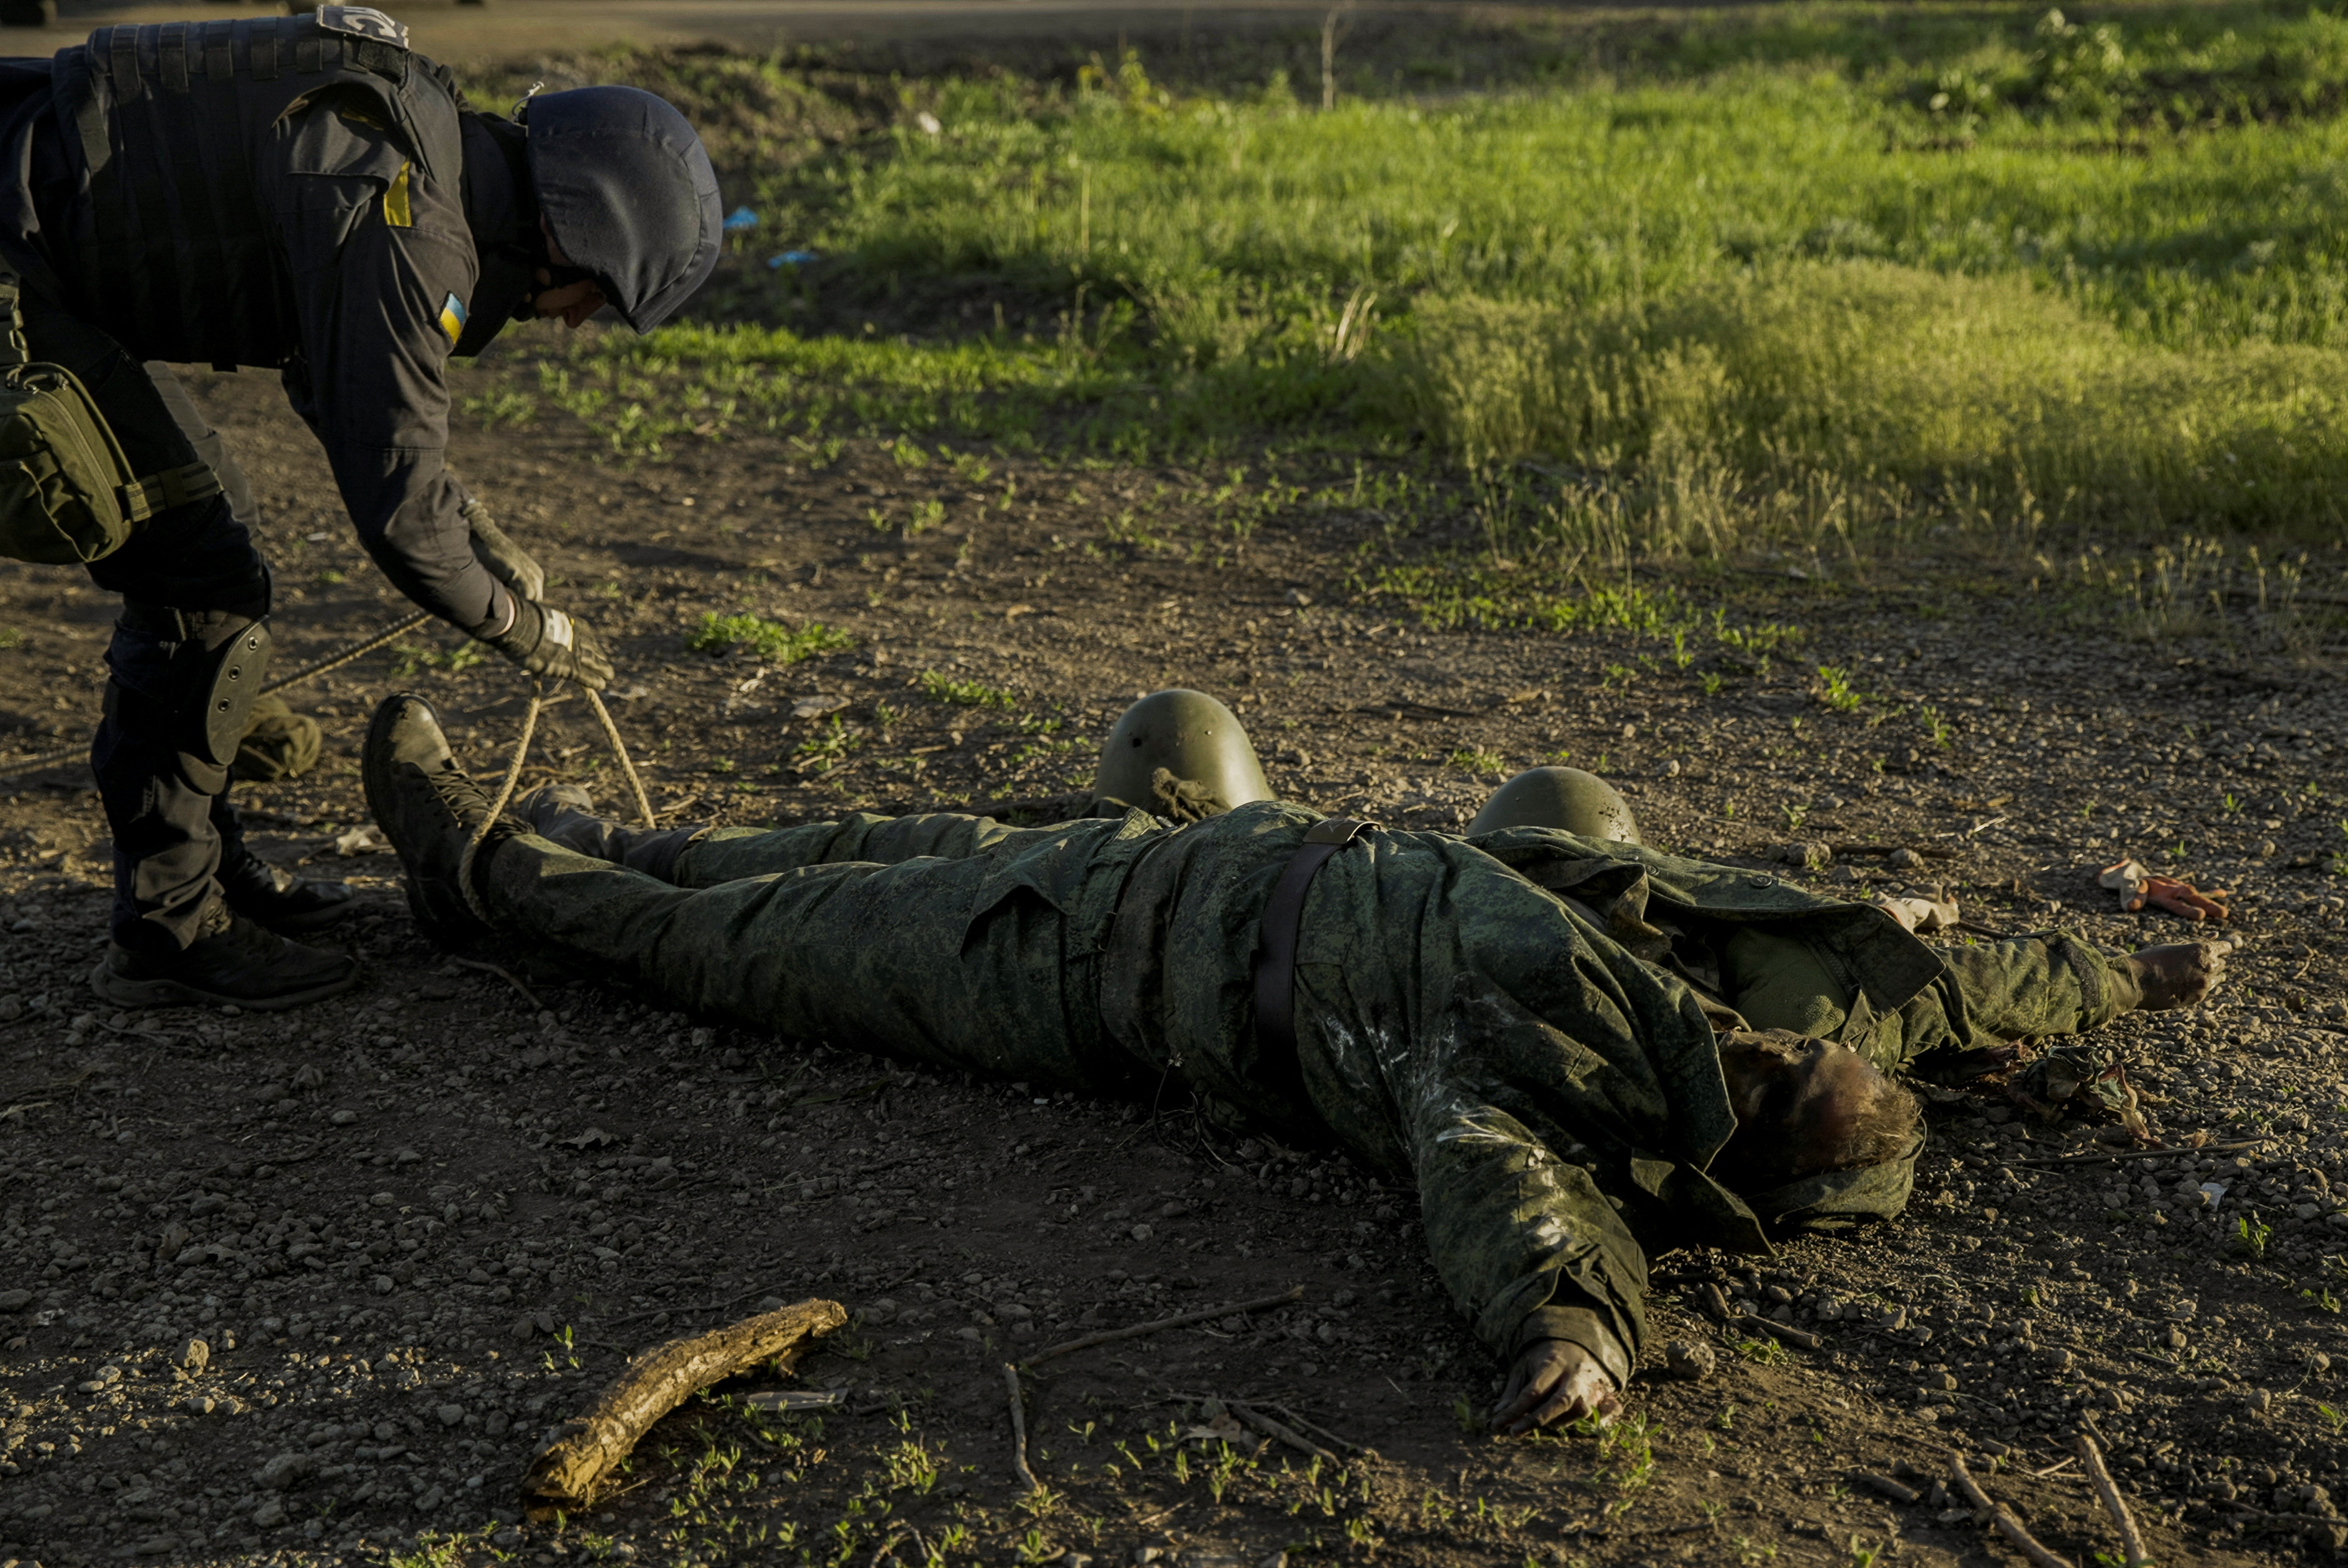 Un soldado ucraniano revisa si el militar ruso muerto tiene explosivos en su vestimenta antes de ser retirado del campo de batalla en Kharkiv (Reuters)